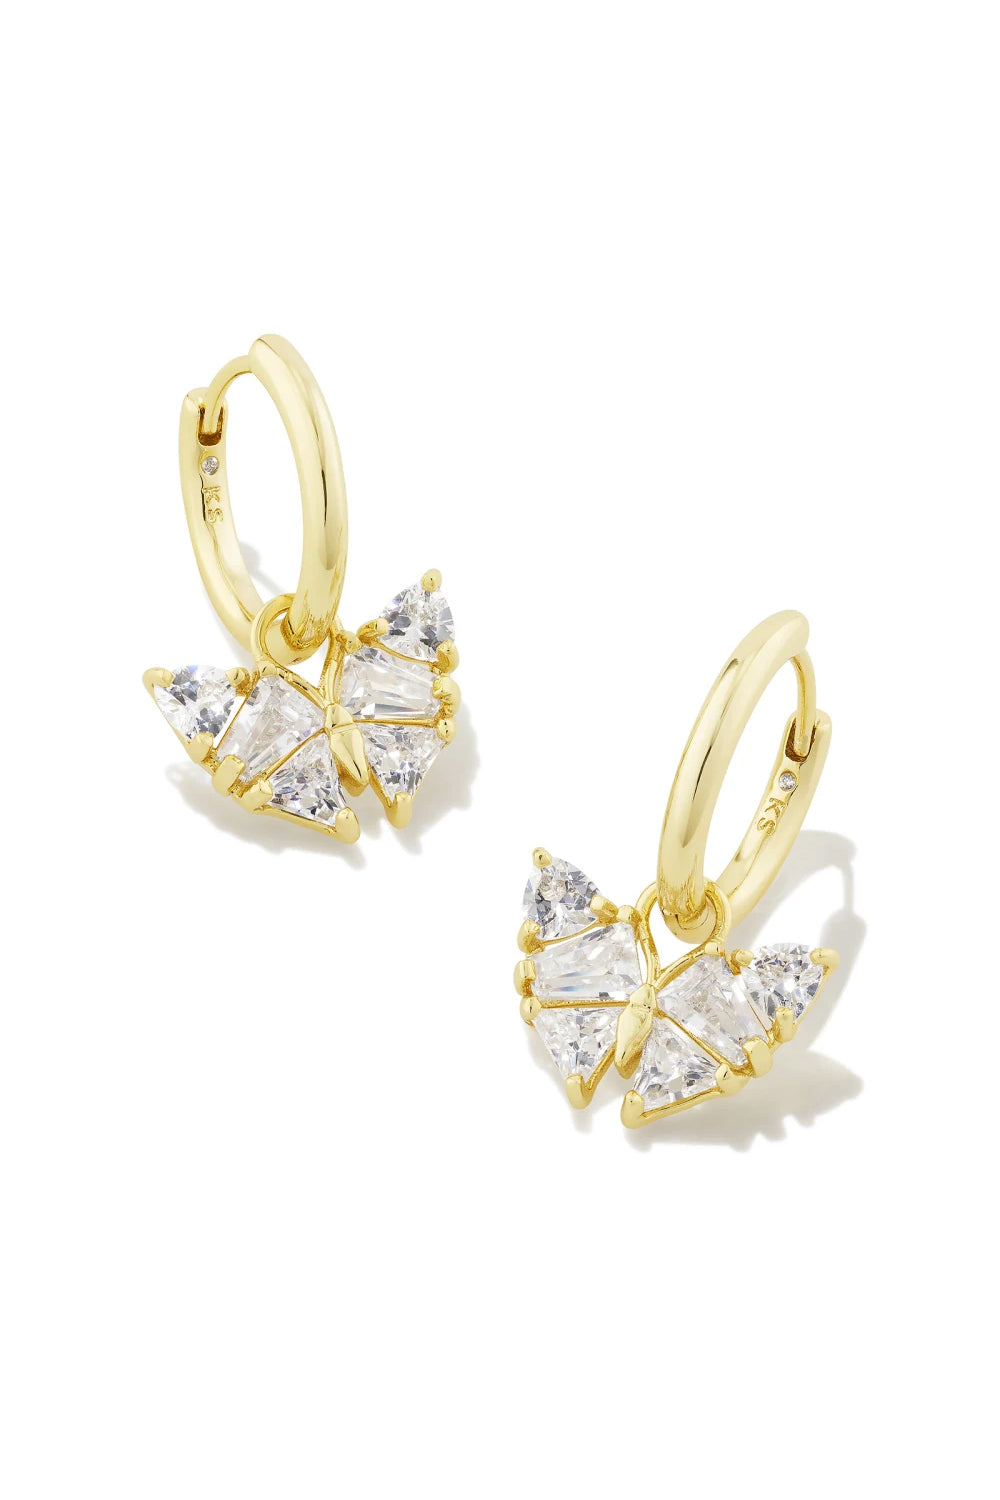 Kendra Scott: Blair Gold Butterfly Huggie Earrings - White Crystal | Makk Fashions